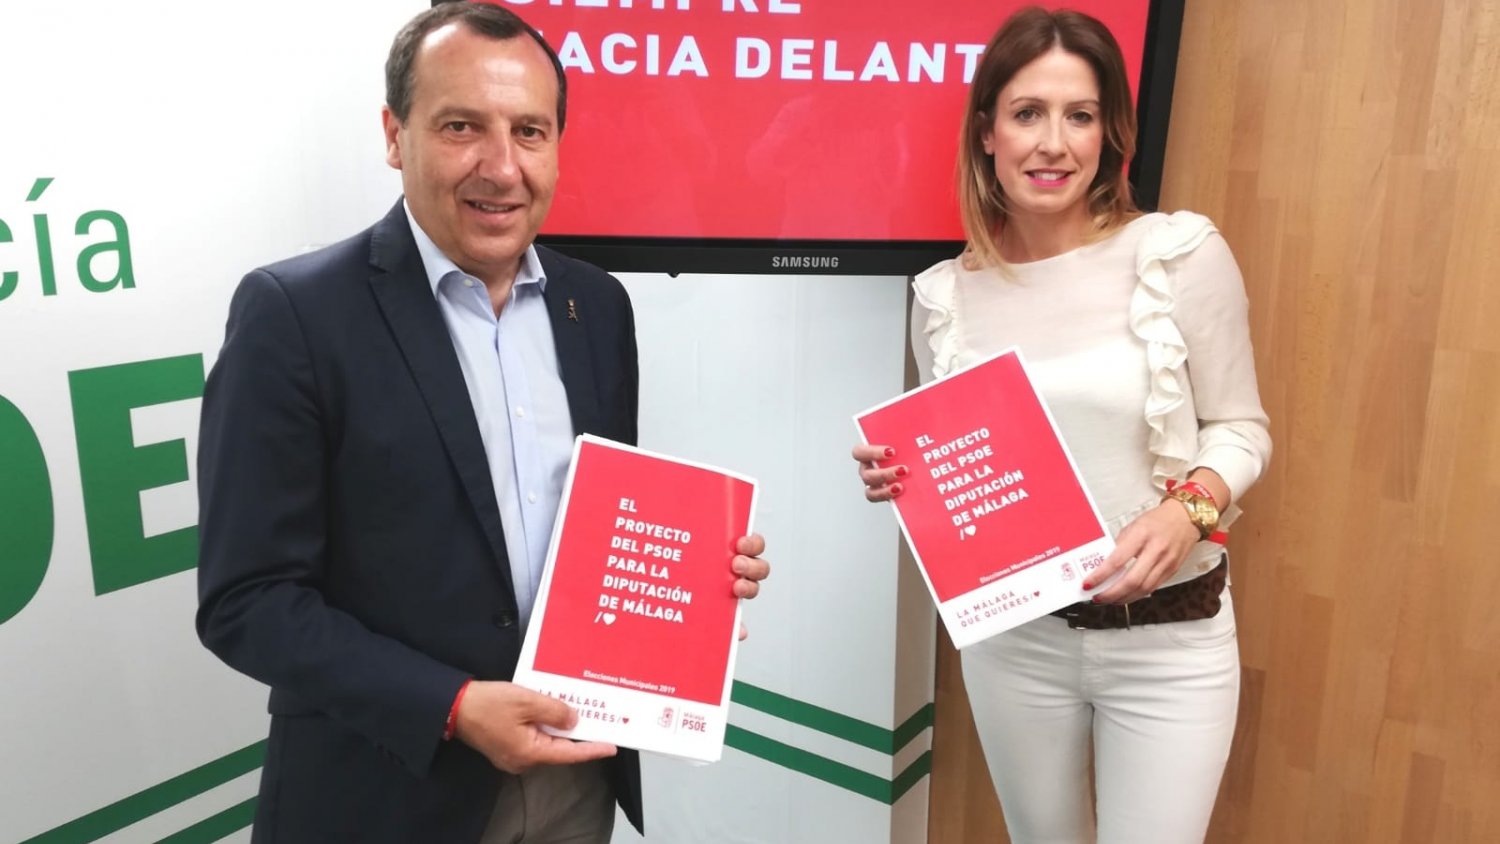 El PSOE anuncia que pondrá en marcha una estrategia provincial contra la despoblación si gobierna en la Diputación